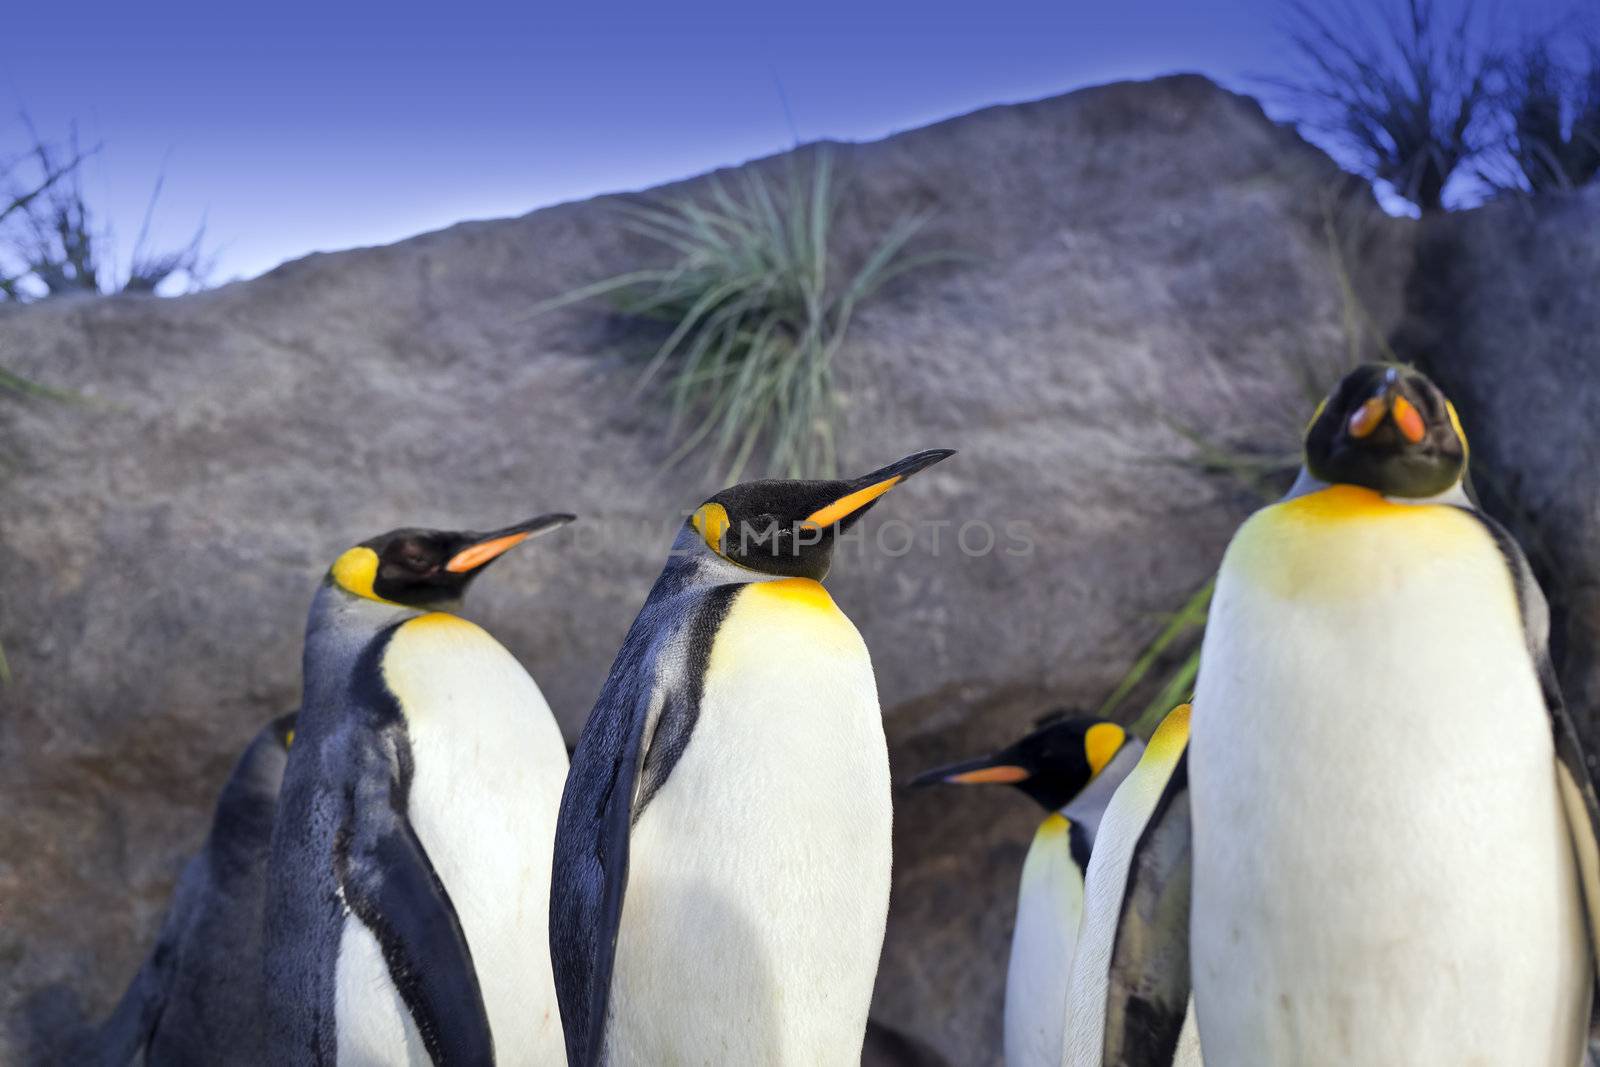 King Penguins by macropixel